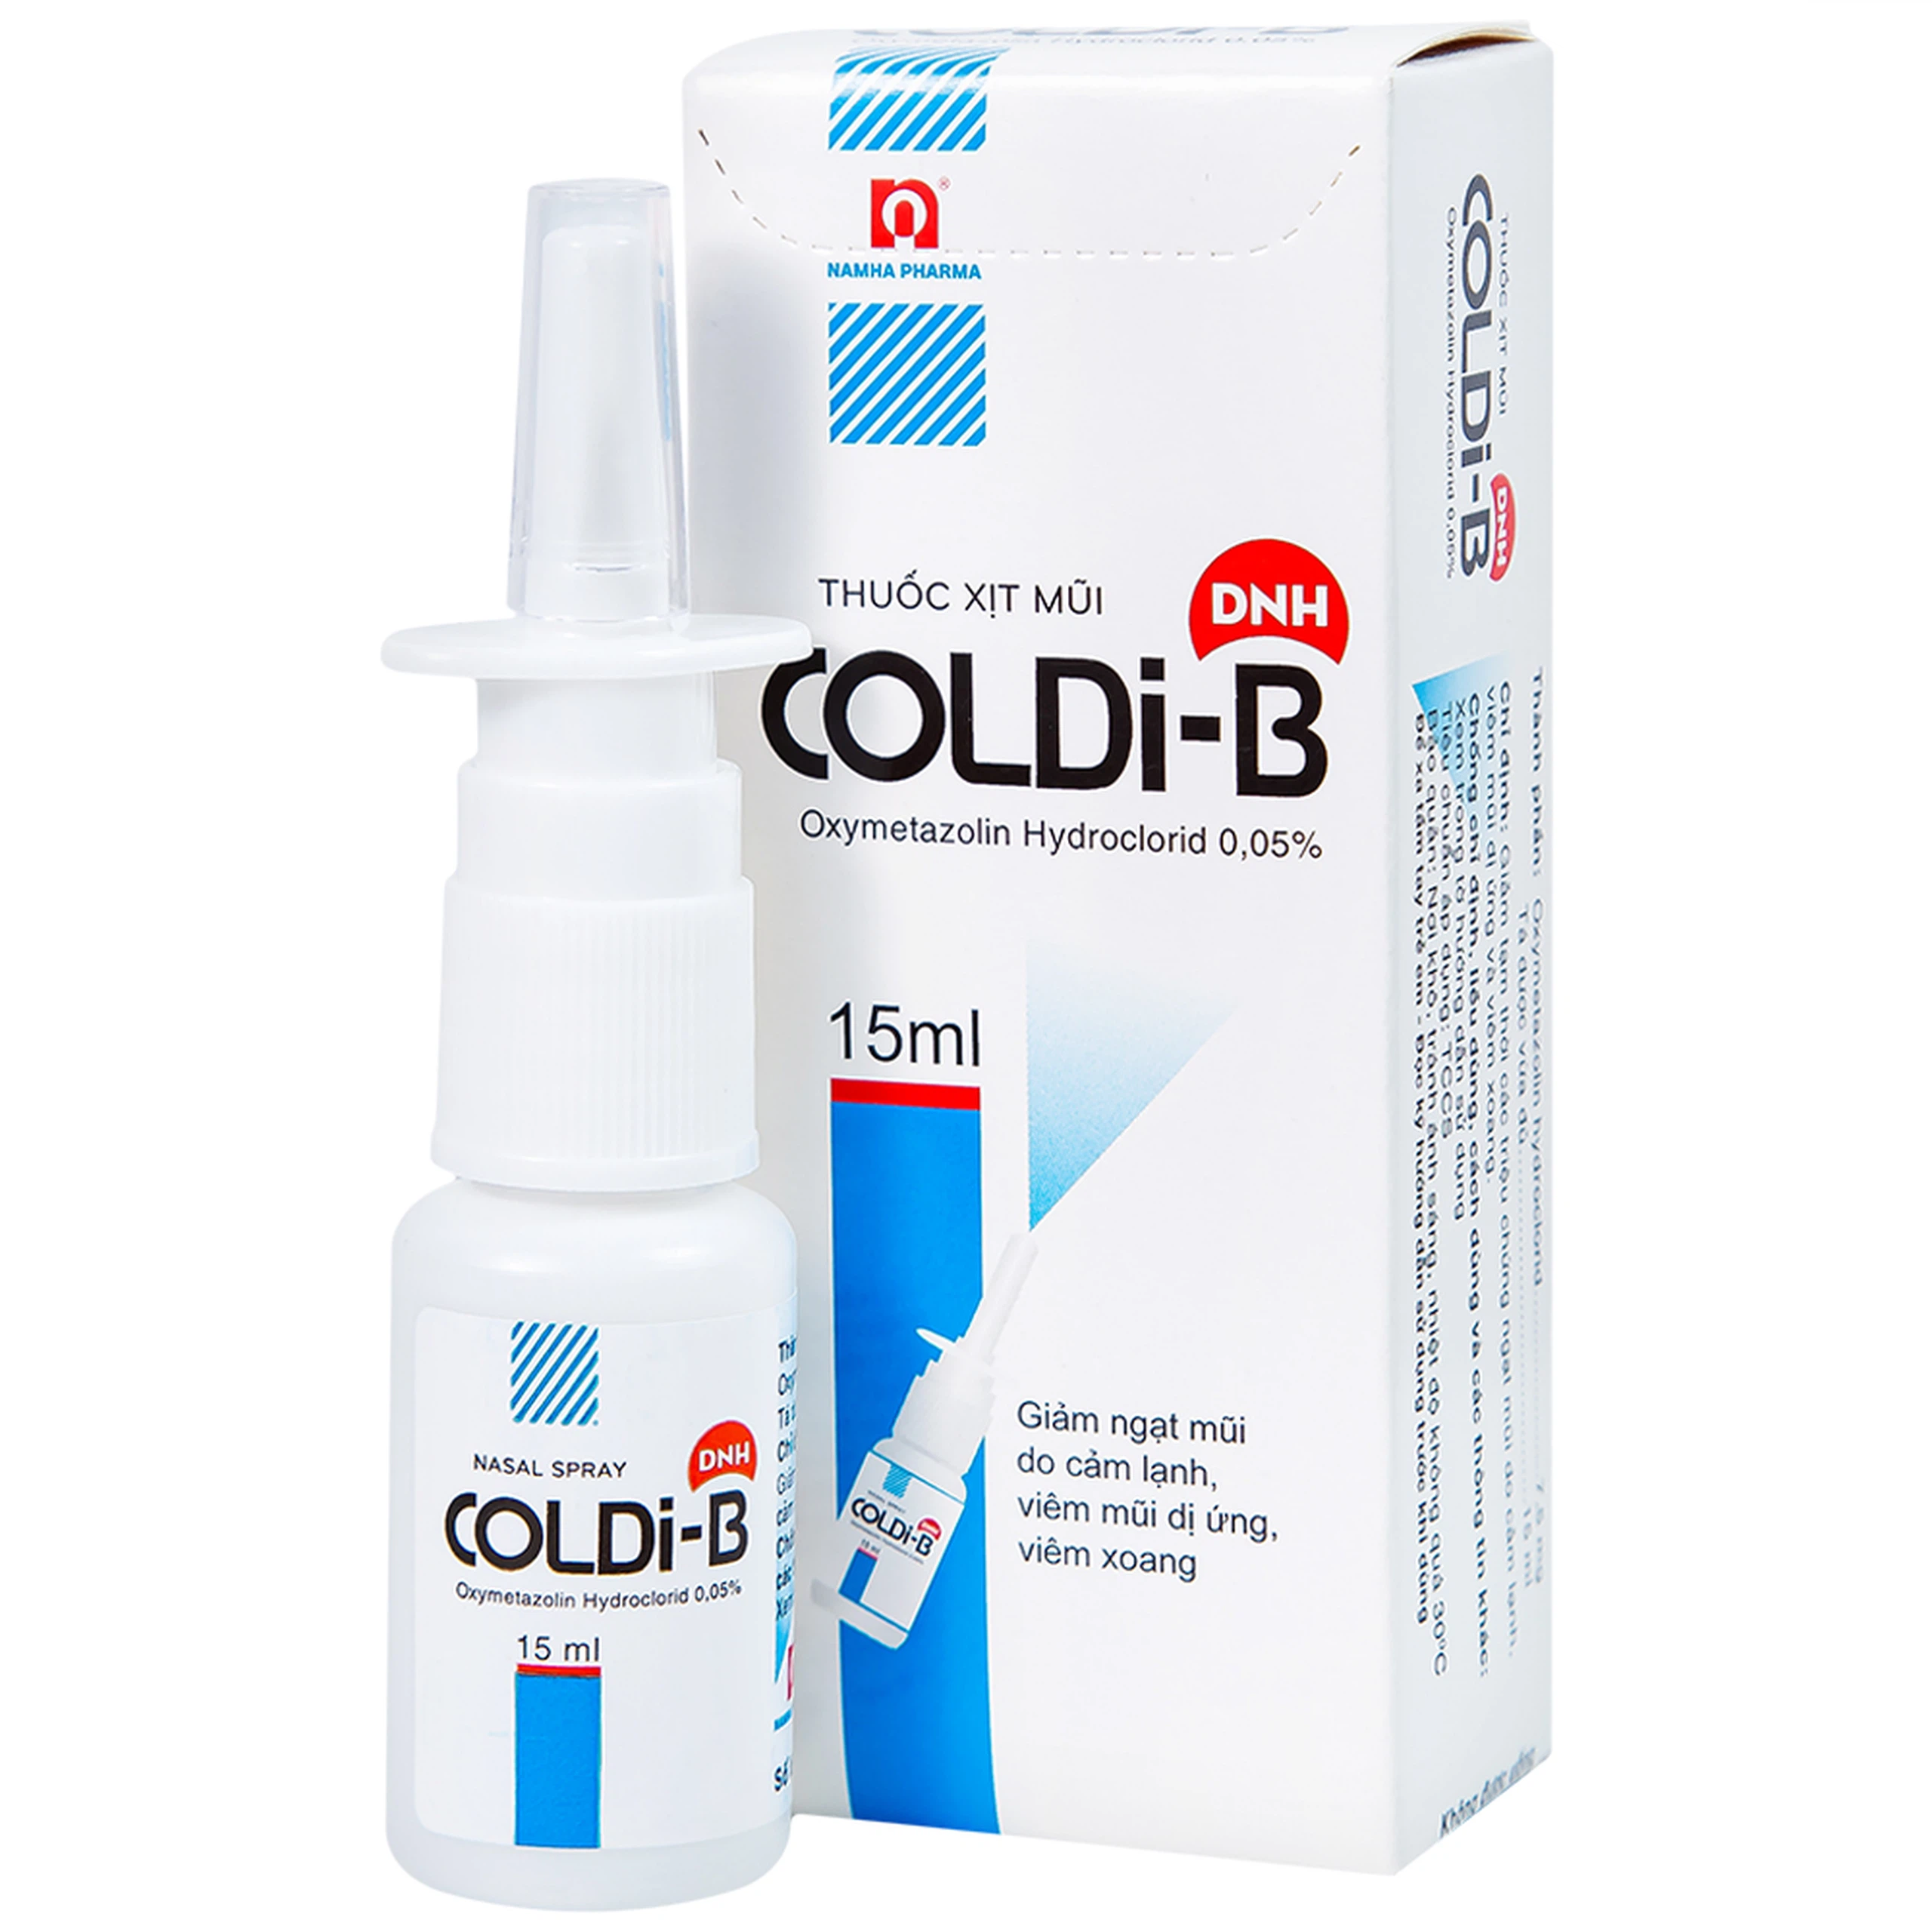 Thuốc xịt mũi Coldi-B Nam Hà giảm ngạt mũi do cảm lạnh, viêm mũi dị ứng, viêm xoang (15ml)